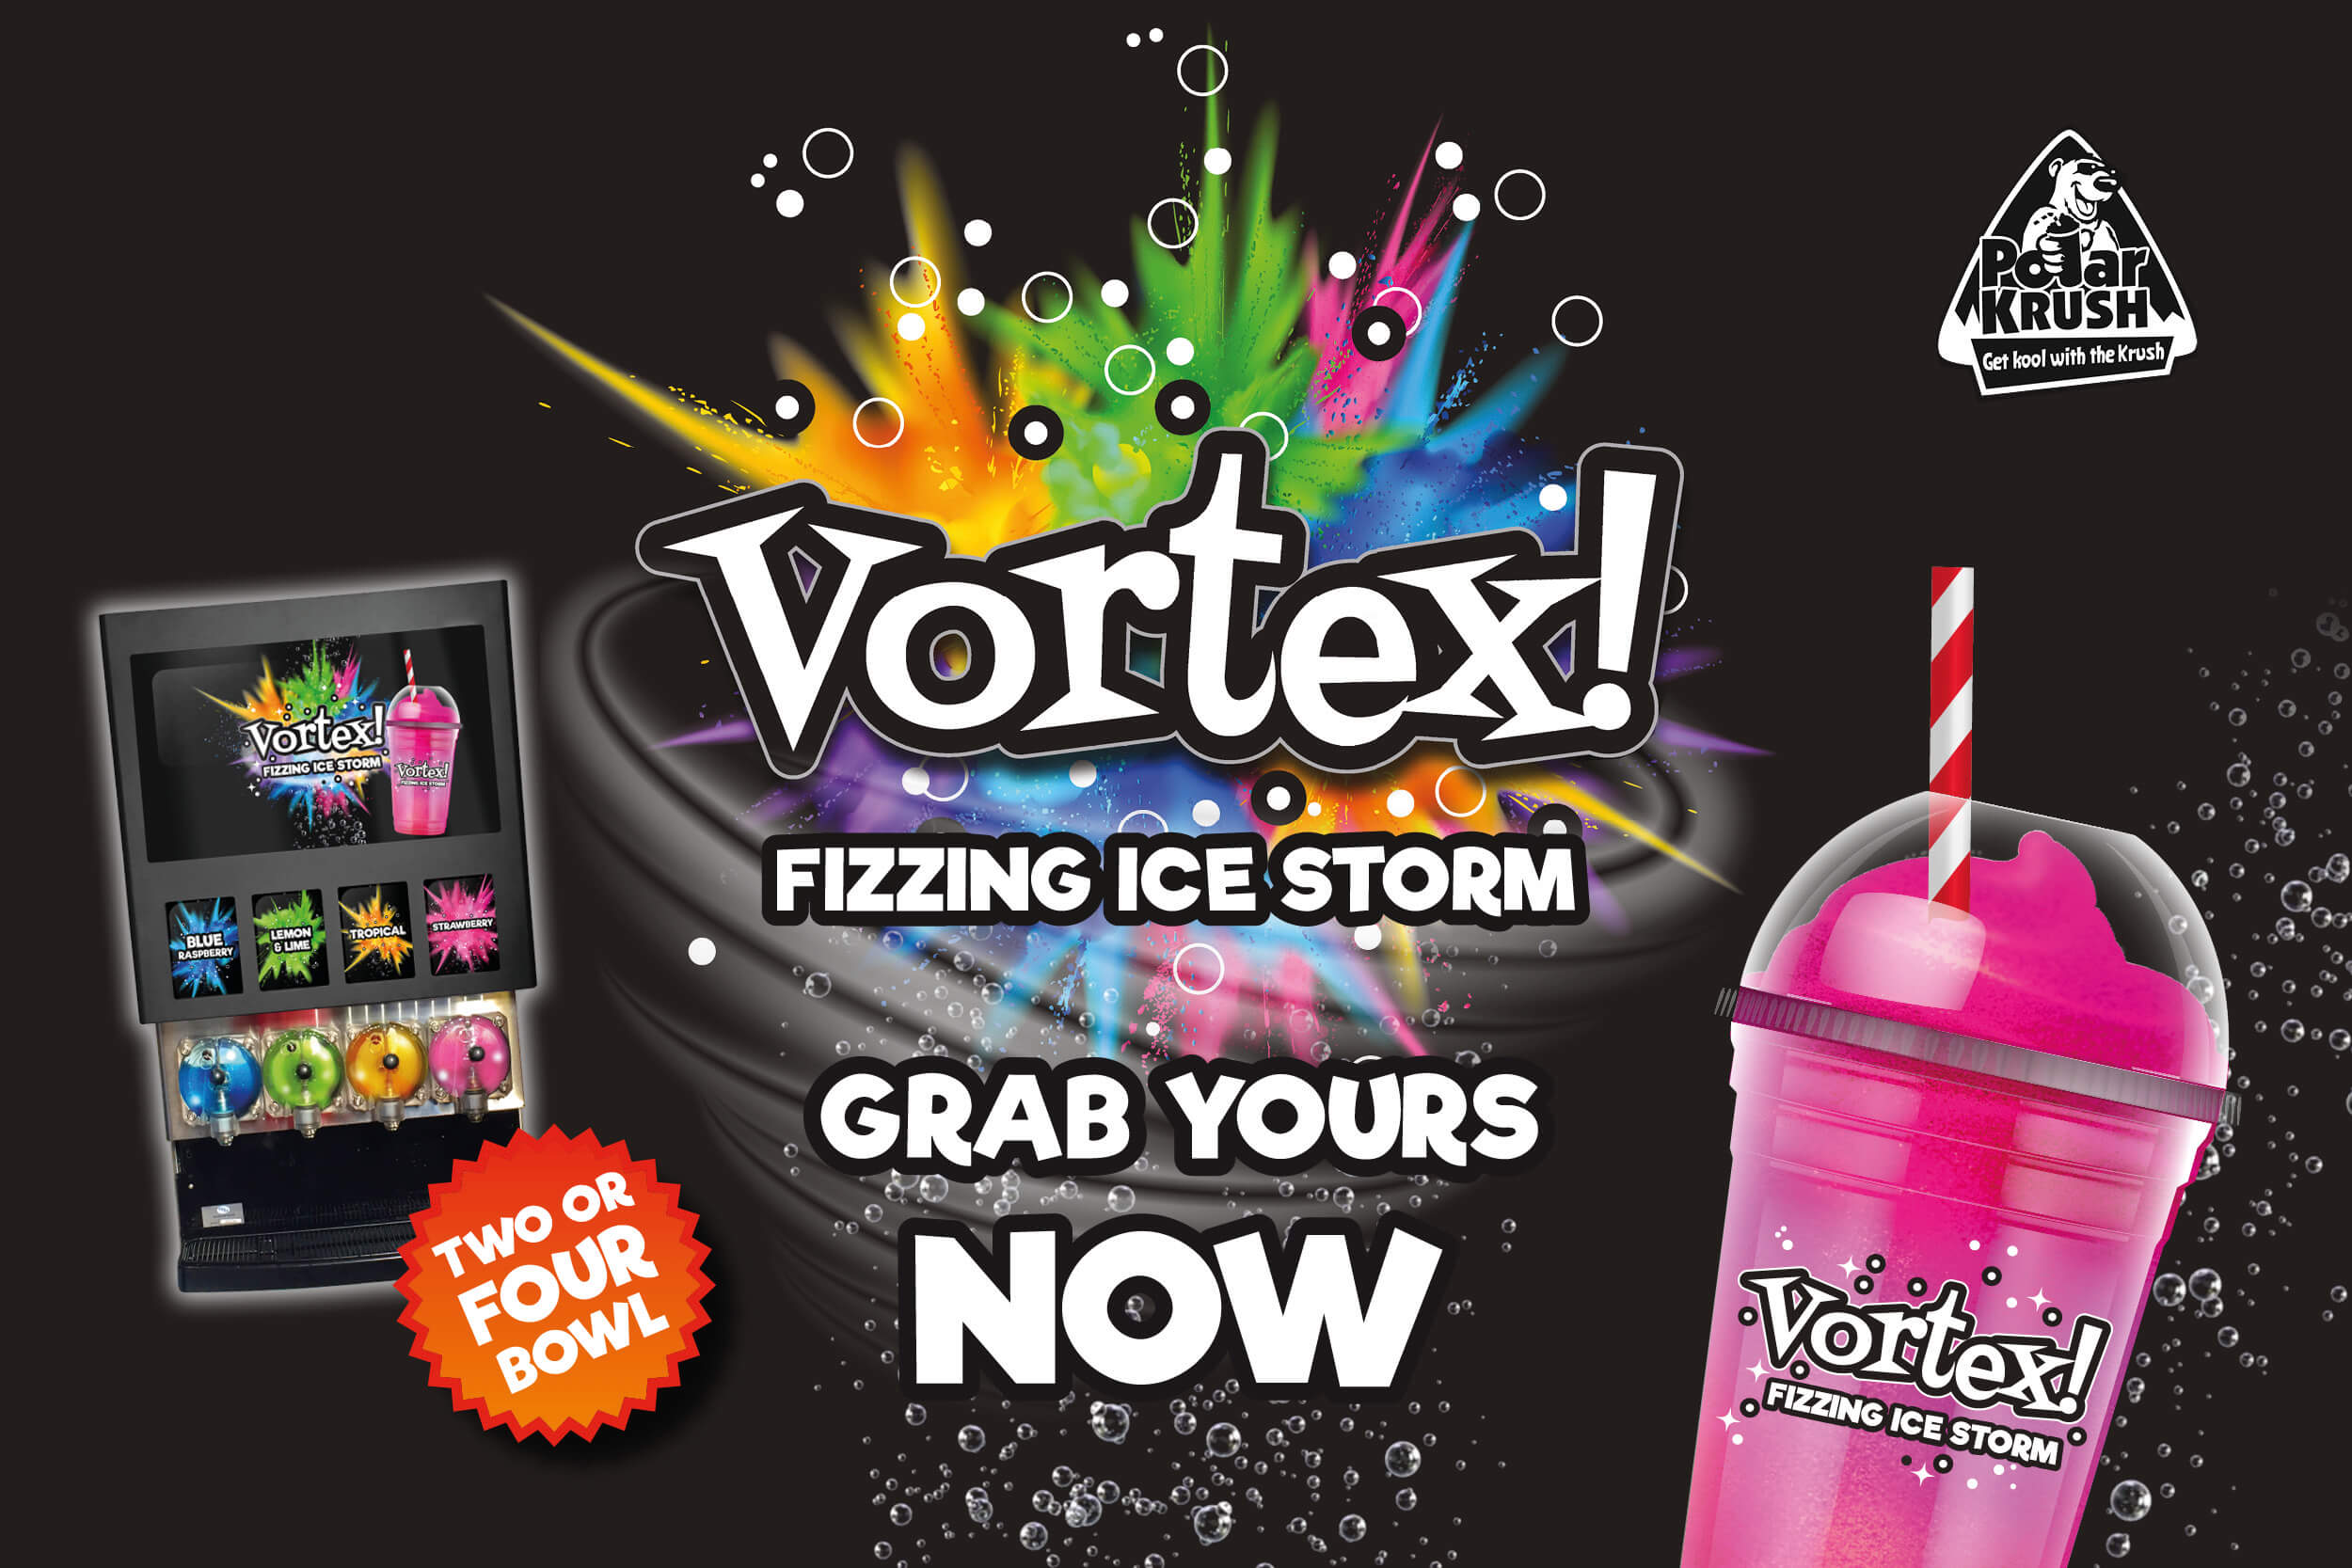 Polar Krush Vortex frozen fizzy drink